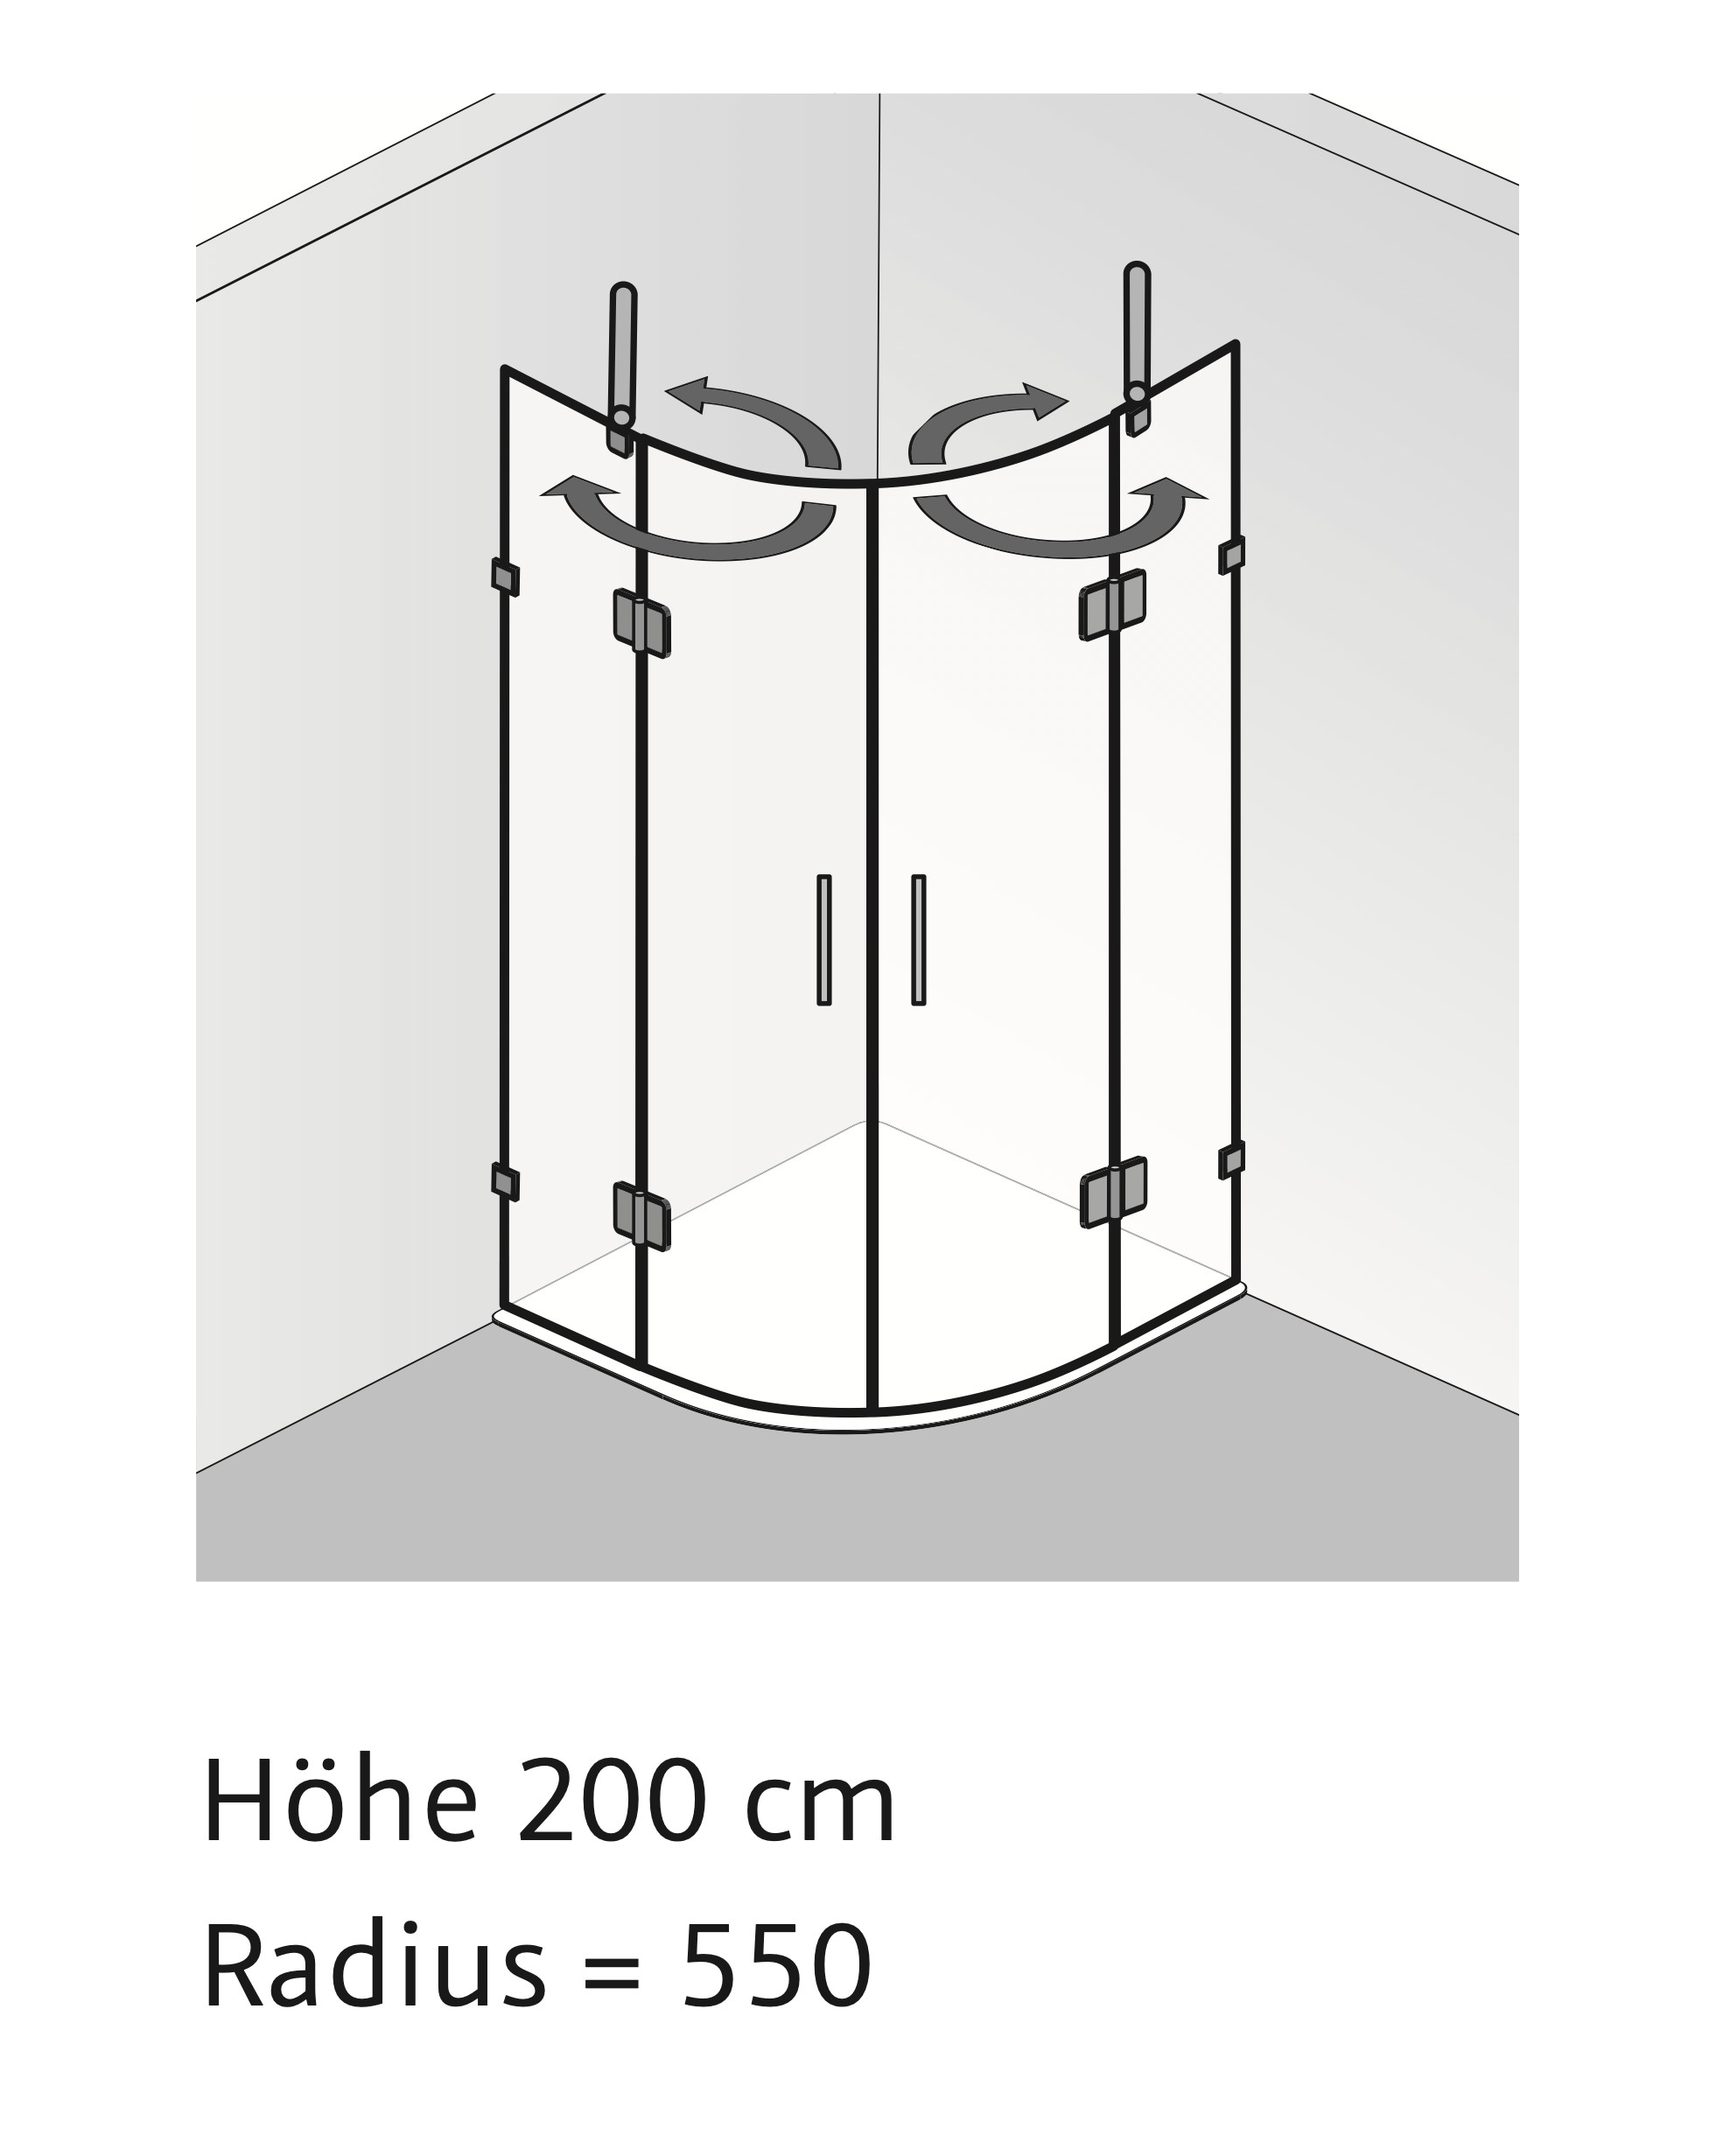 HSK Runddusche pendelbar 4-teilig „Aperto Pur“ in Glas Mattierung mittig (65 cm),